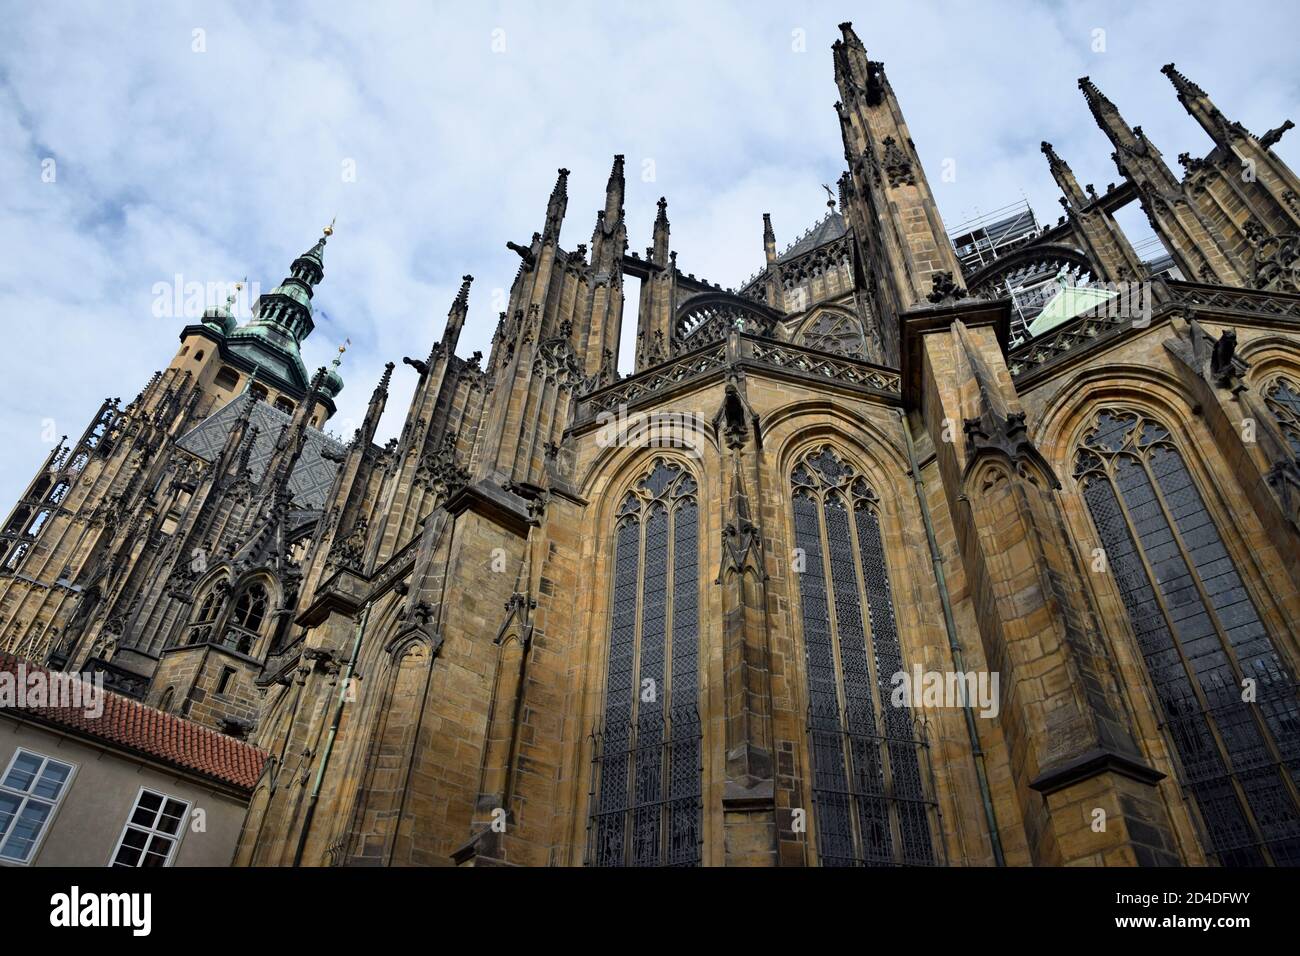 La Cattedrale Metropolitana di San Vito, situata all'interno del Castello di Praga, in Czechia, contiene le tombe di molti re boemi e imperatori sacri romani. Foto Stock